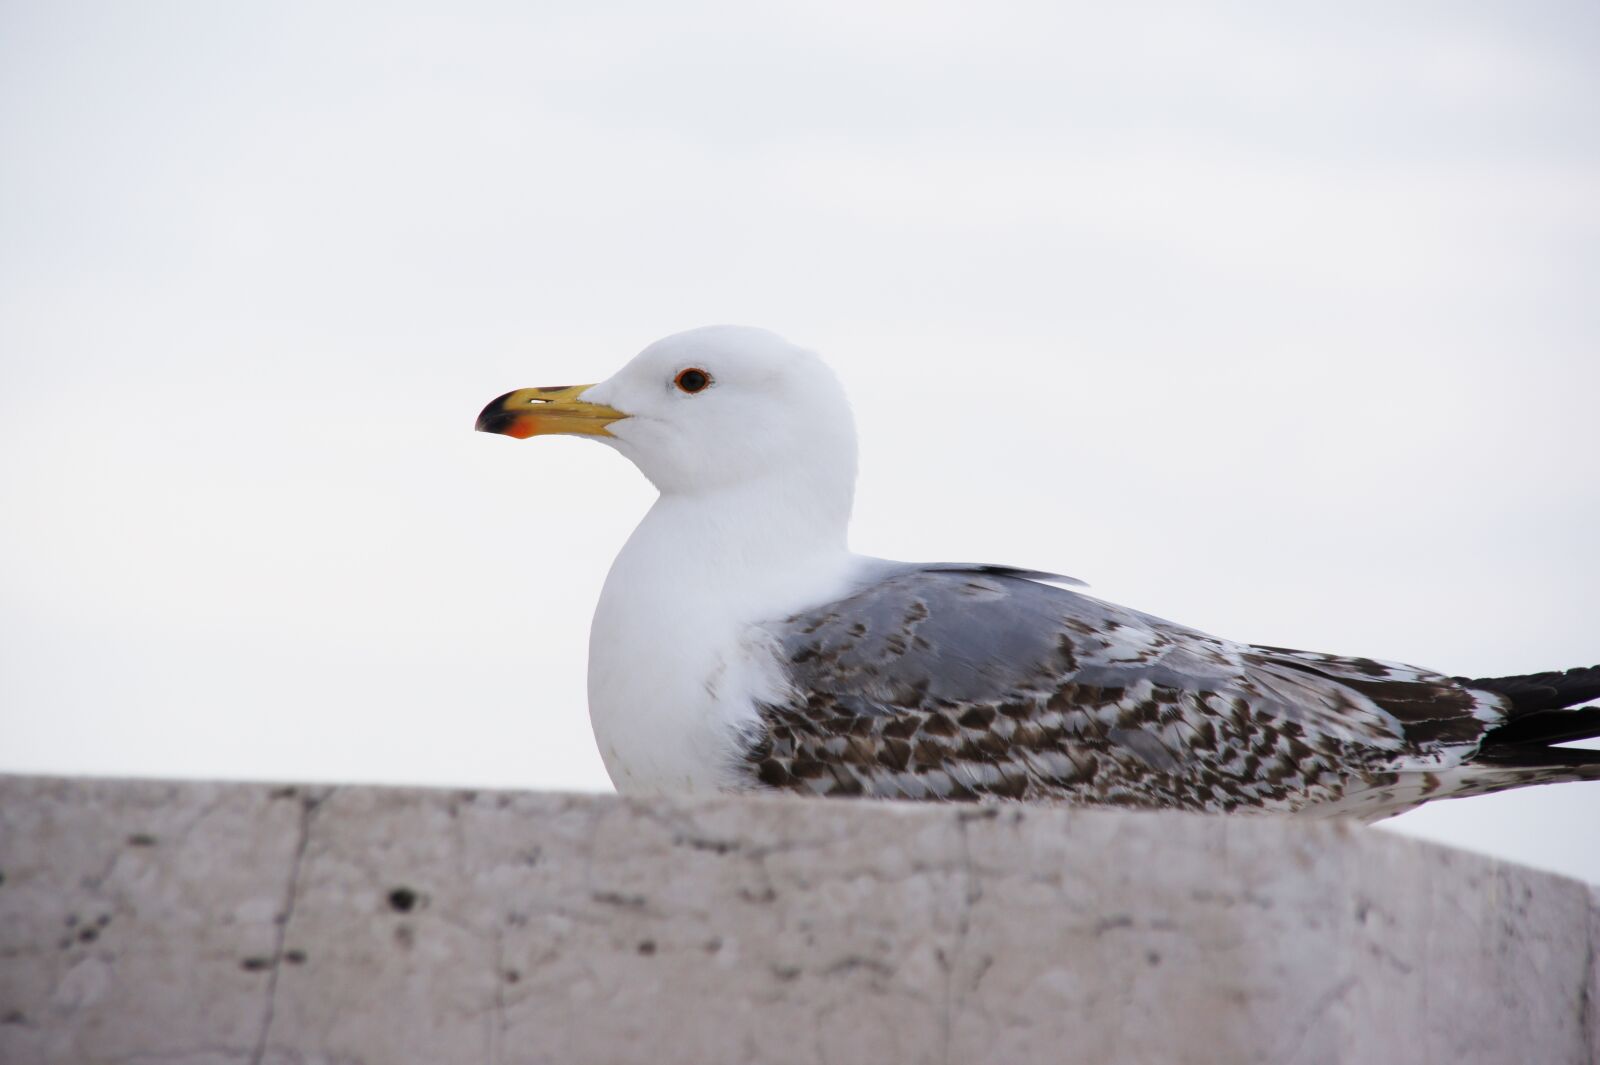 Sony SLT-A33 sample photo. Seagull, animal, bird photography